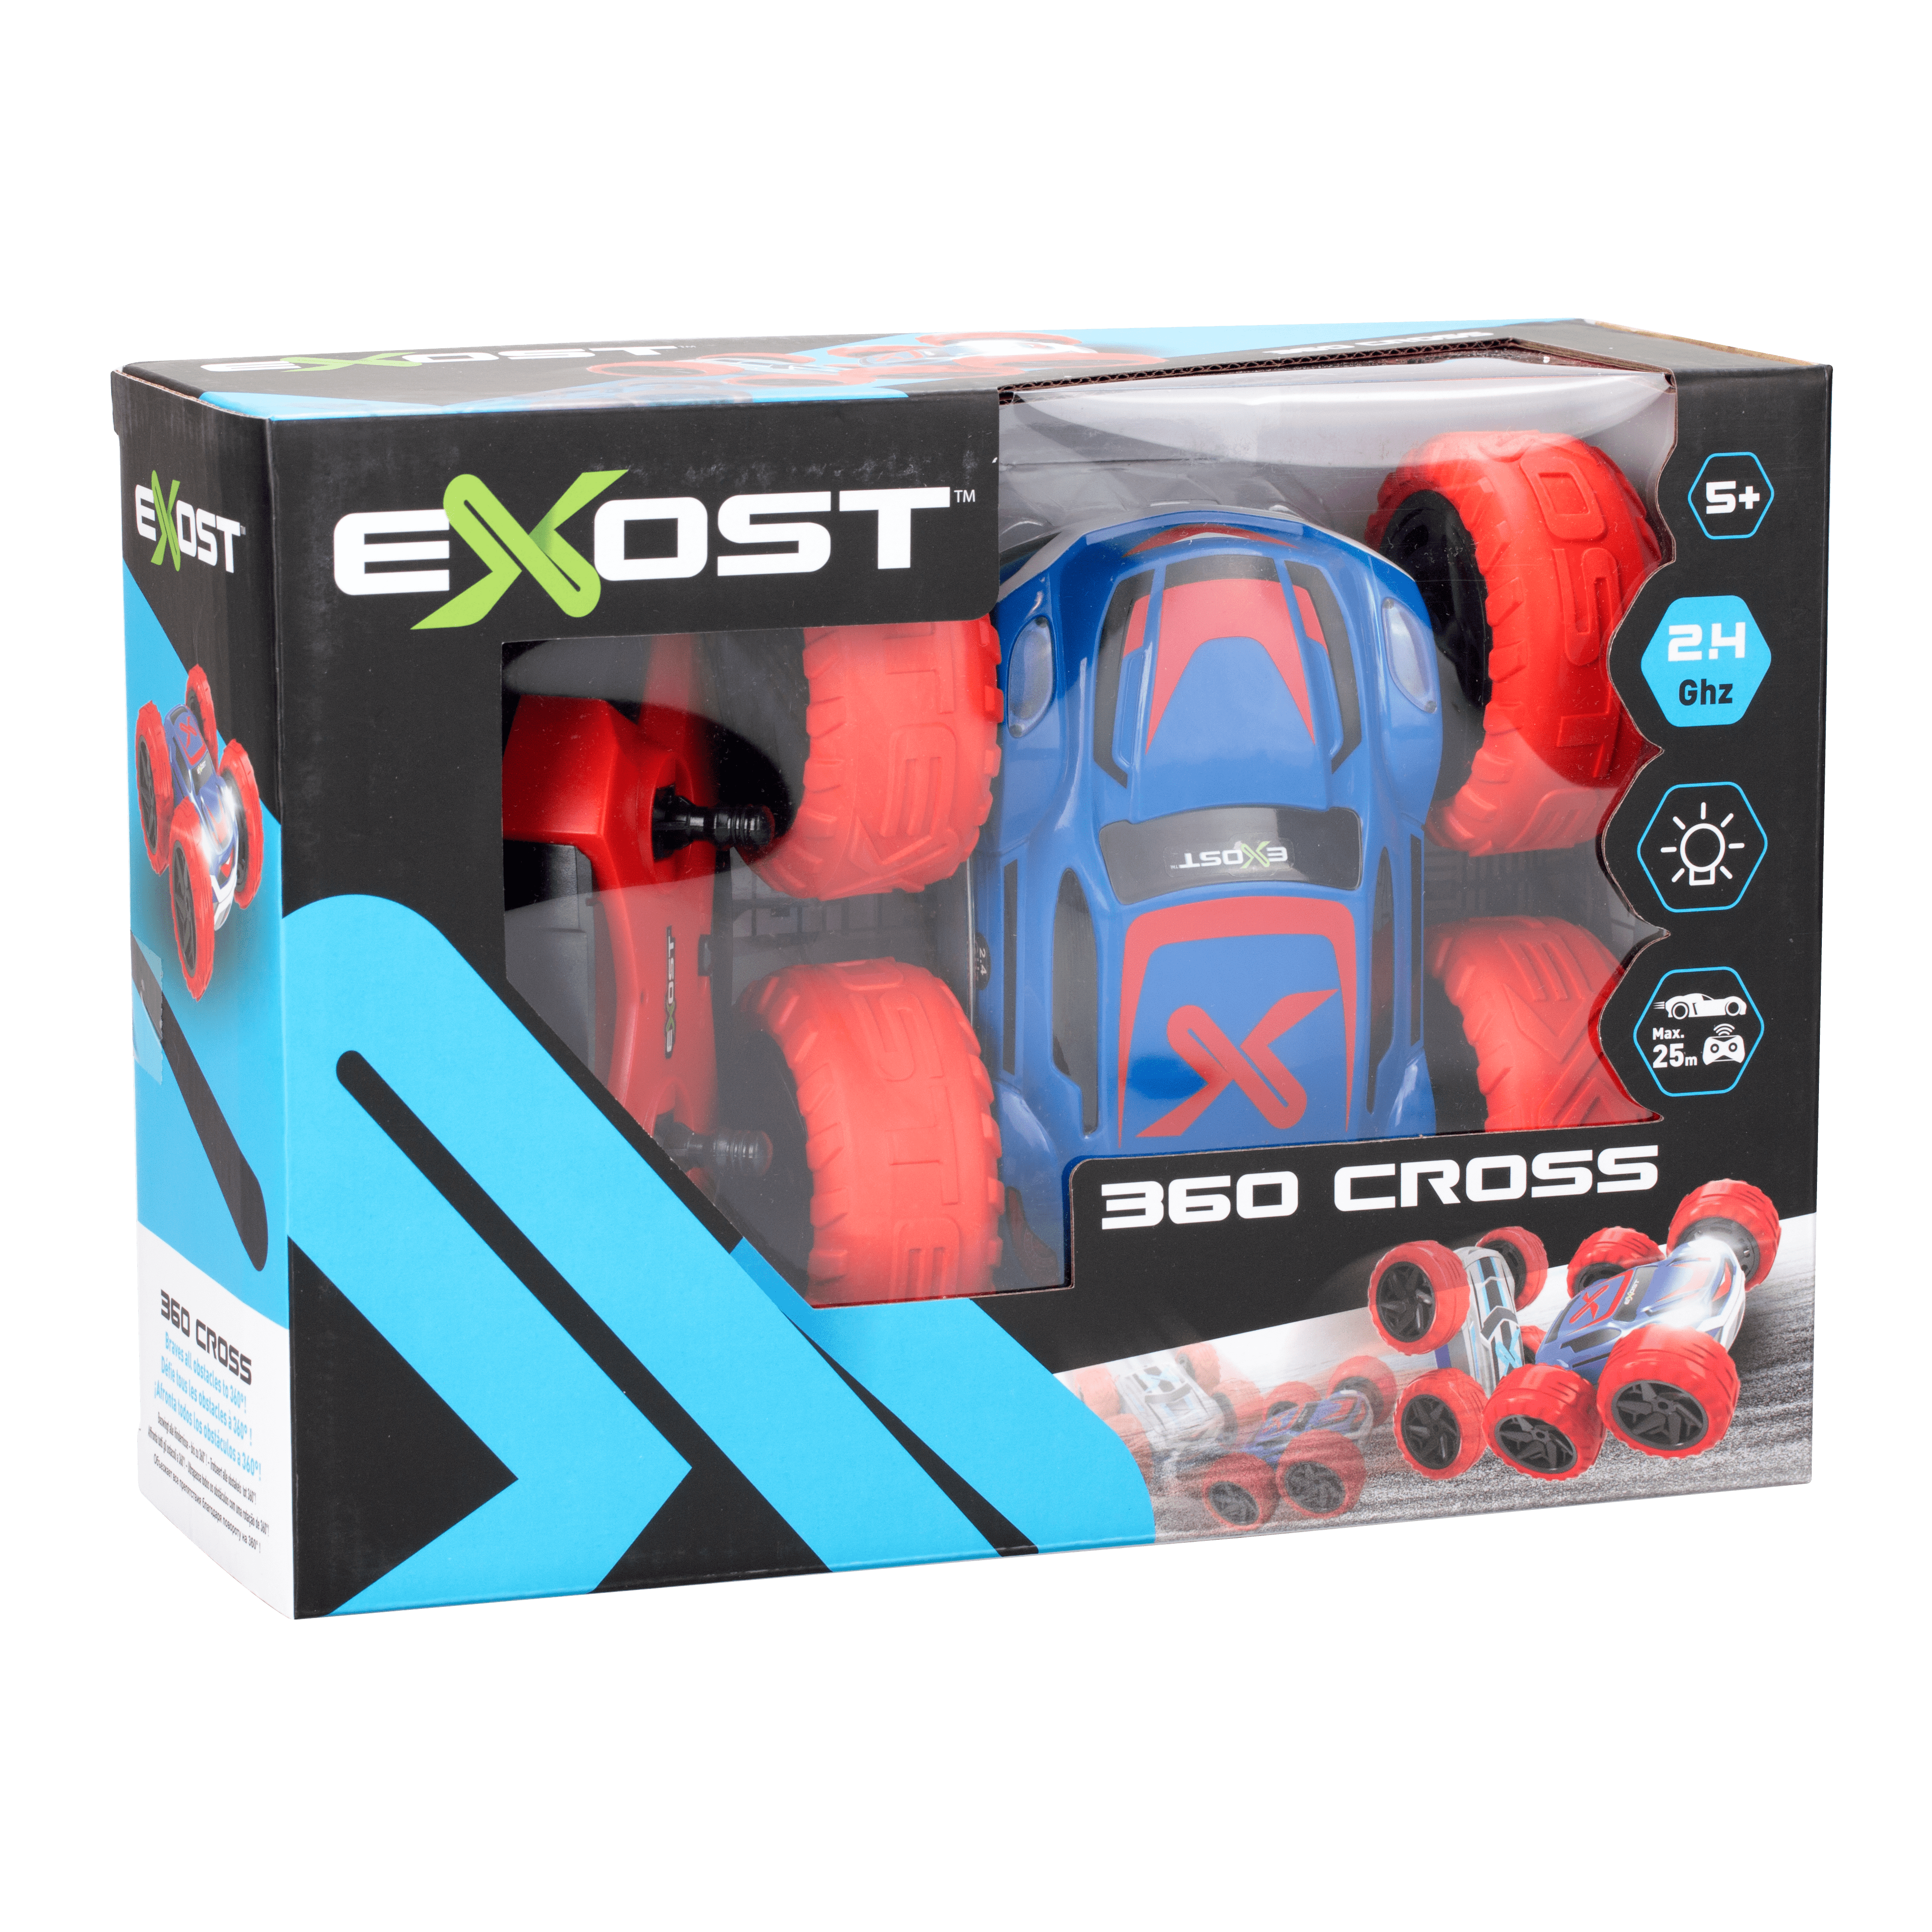 EXOST - Voiture Télécommandée 360 Cross Batterie - Dès 5 ans